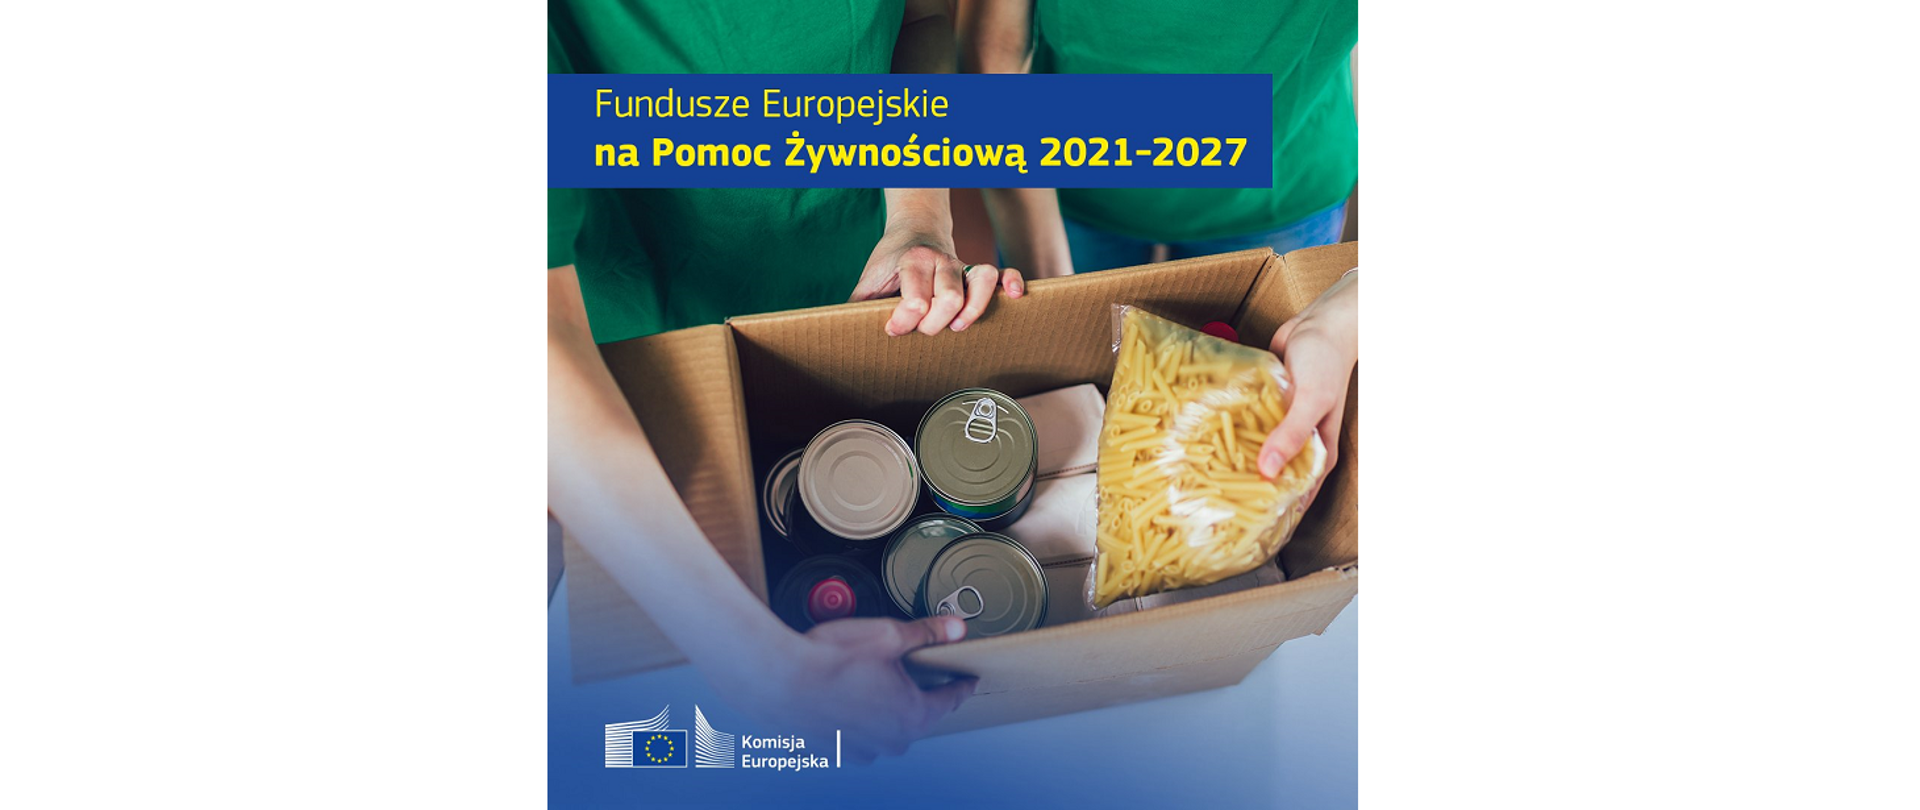 Fundusz Europejskie FEPŻ 2021-2027 -obraz